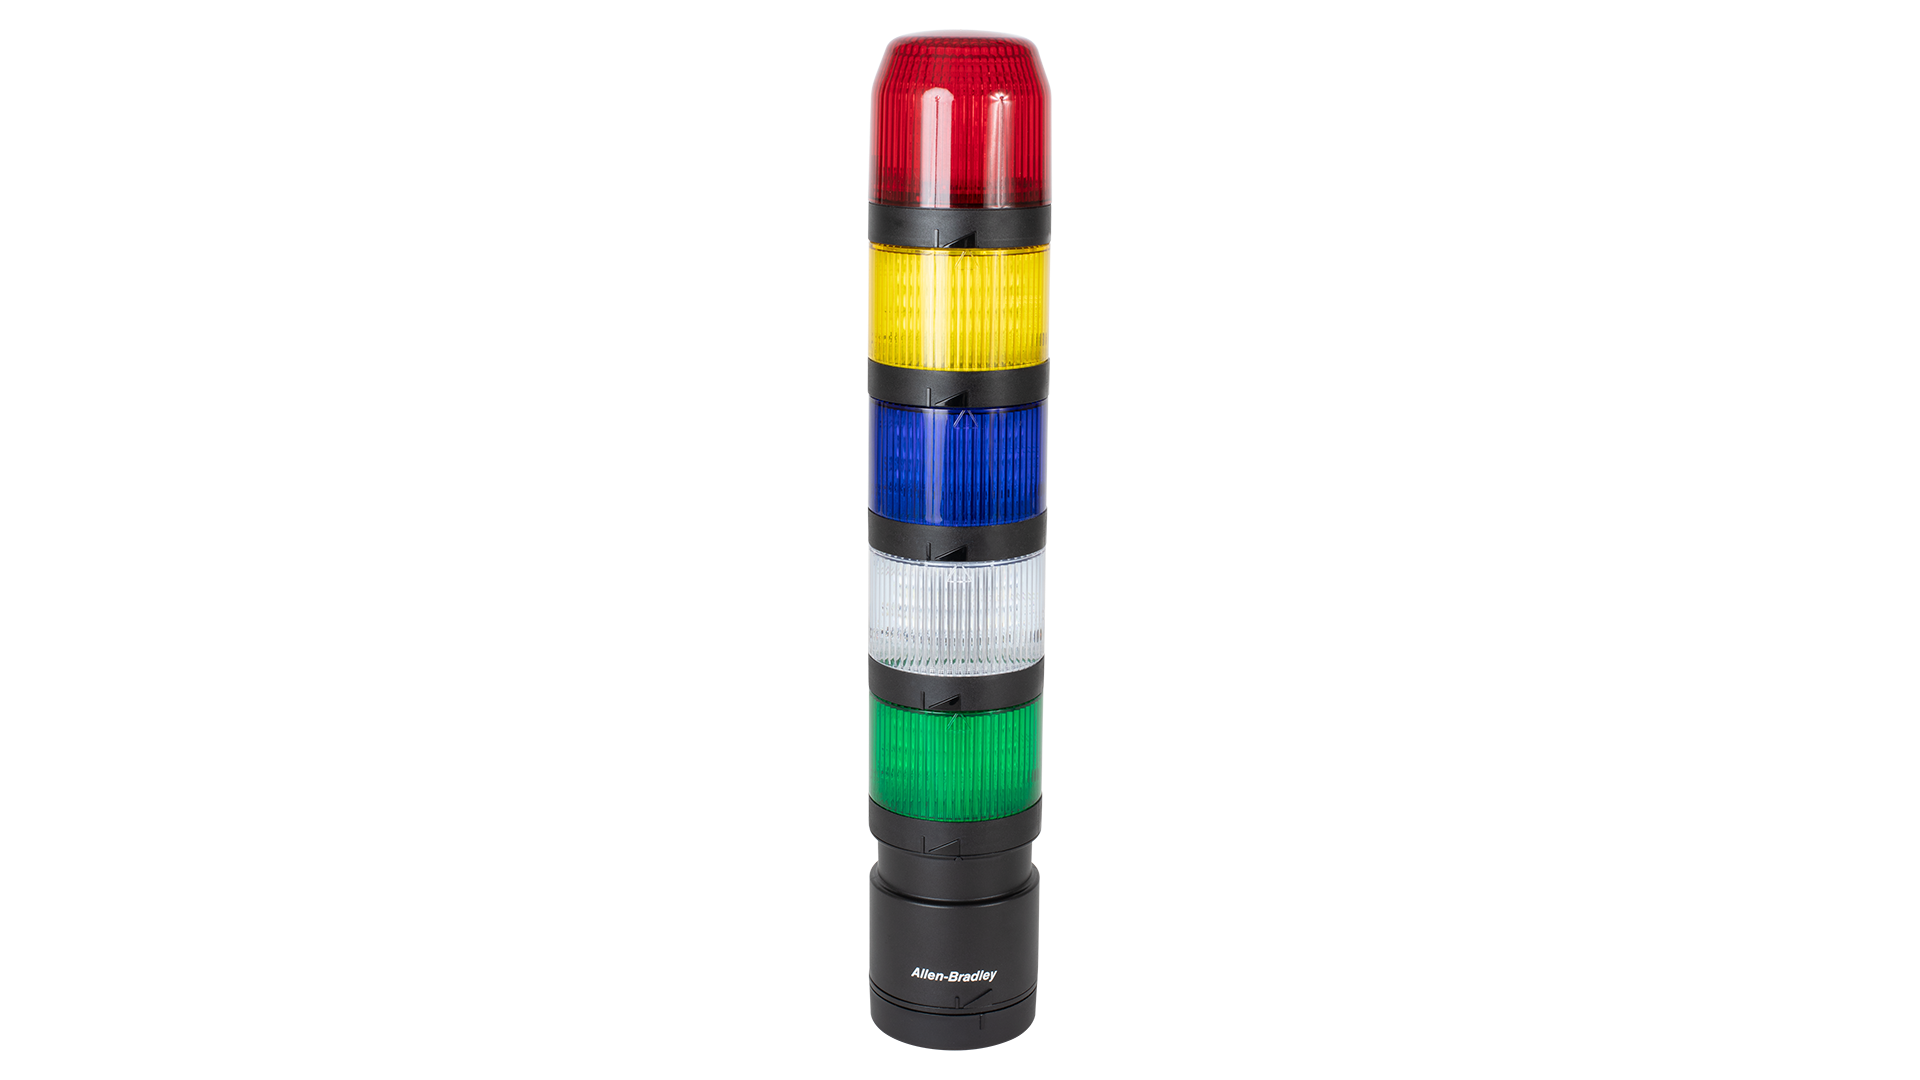 Columna luminosa IO-Link. De arriba a abajo: módulo de sonda de transductor negro, módulos de luz roja, ámbar y verde apagados, base de montaje vertical negra